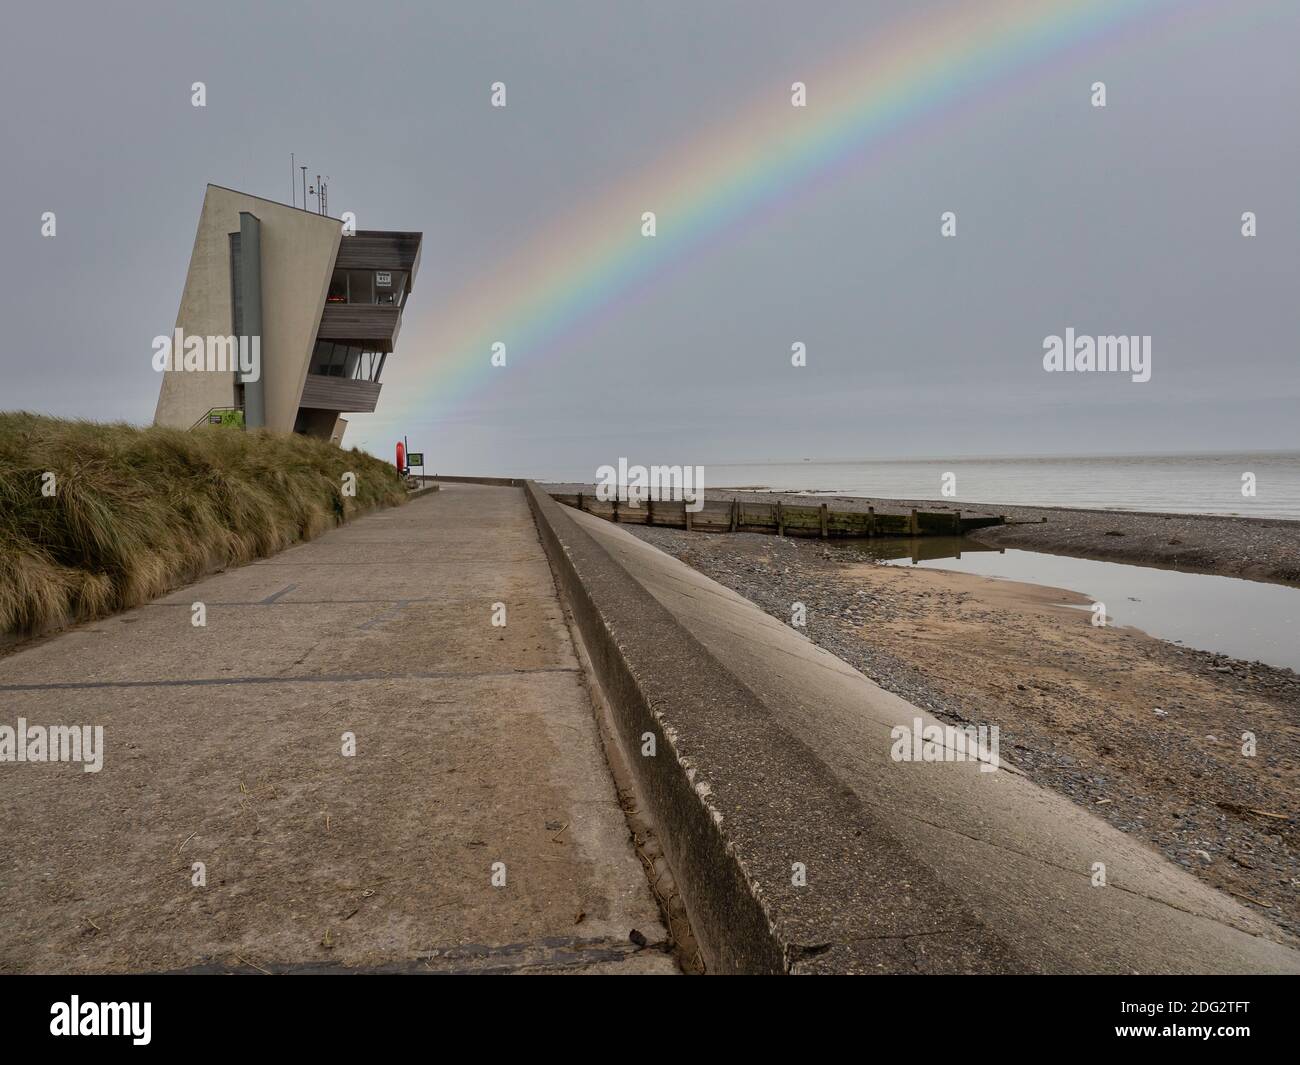 Rainbow à Rossall Beach, Fleetwood, Lancashire, Royaume-Uni. Le bâtiment de quatre étages situé sur la promenade extérieure de Rossall point est la tour Rossall Coastwatch. Banque D'Images